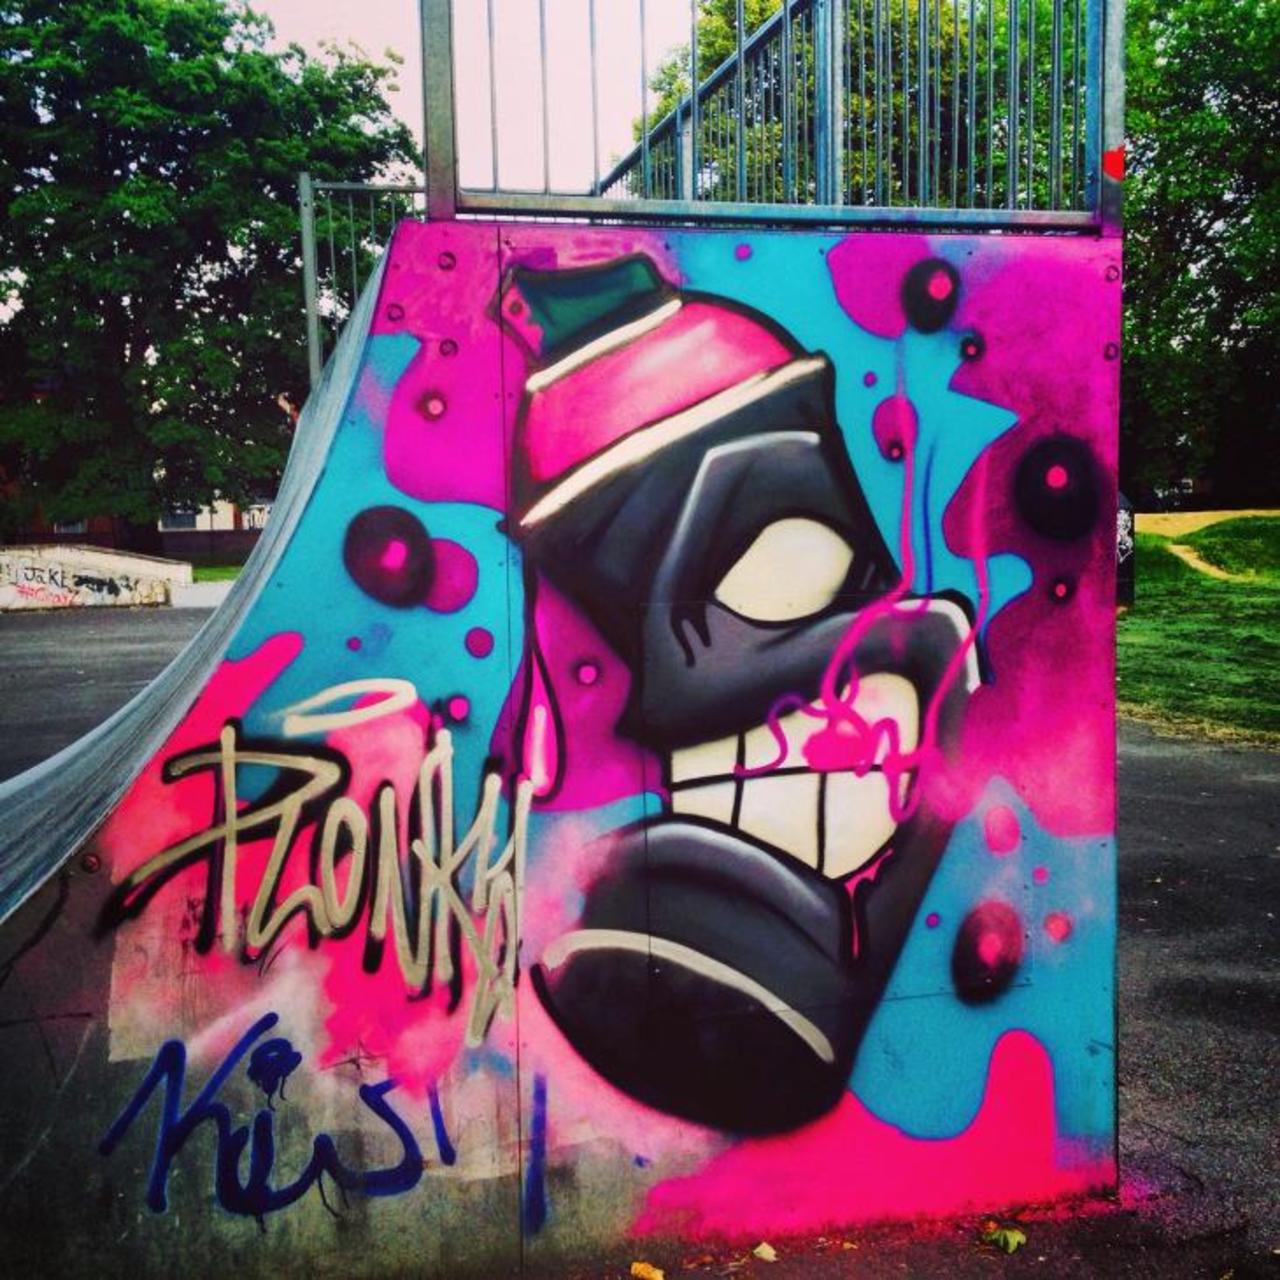 Found a few months back at #Gloucester skatepark #skatelife #graffiti #streetart artist unknown @rtglos http://t.co/KJEO1PlAeJ